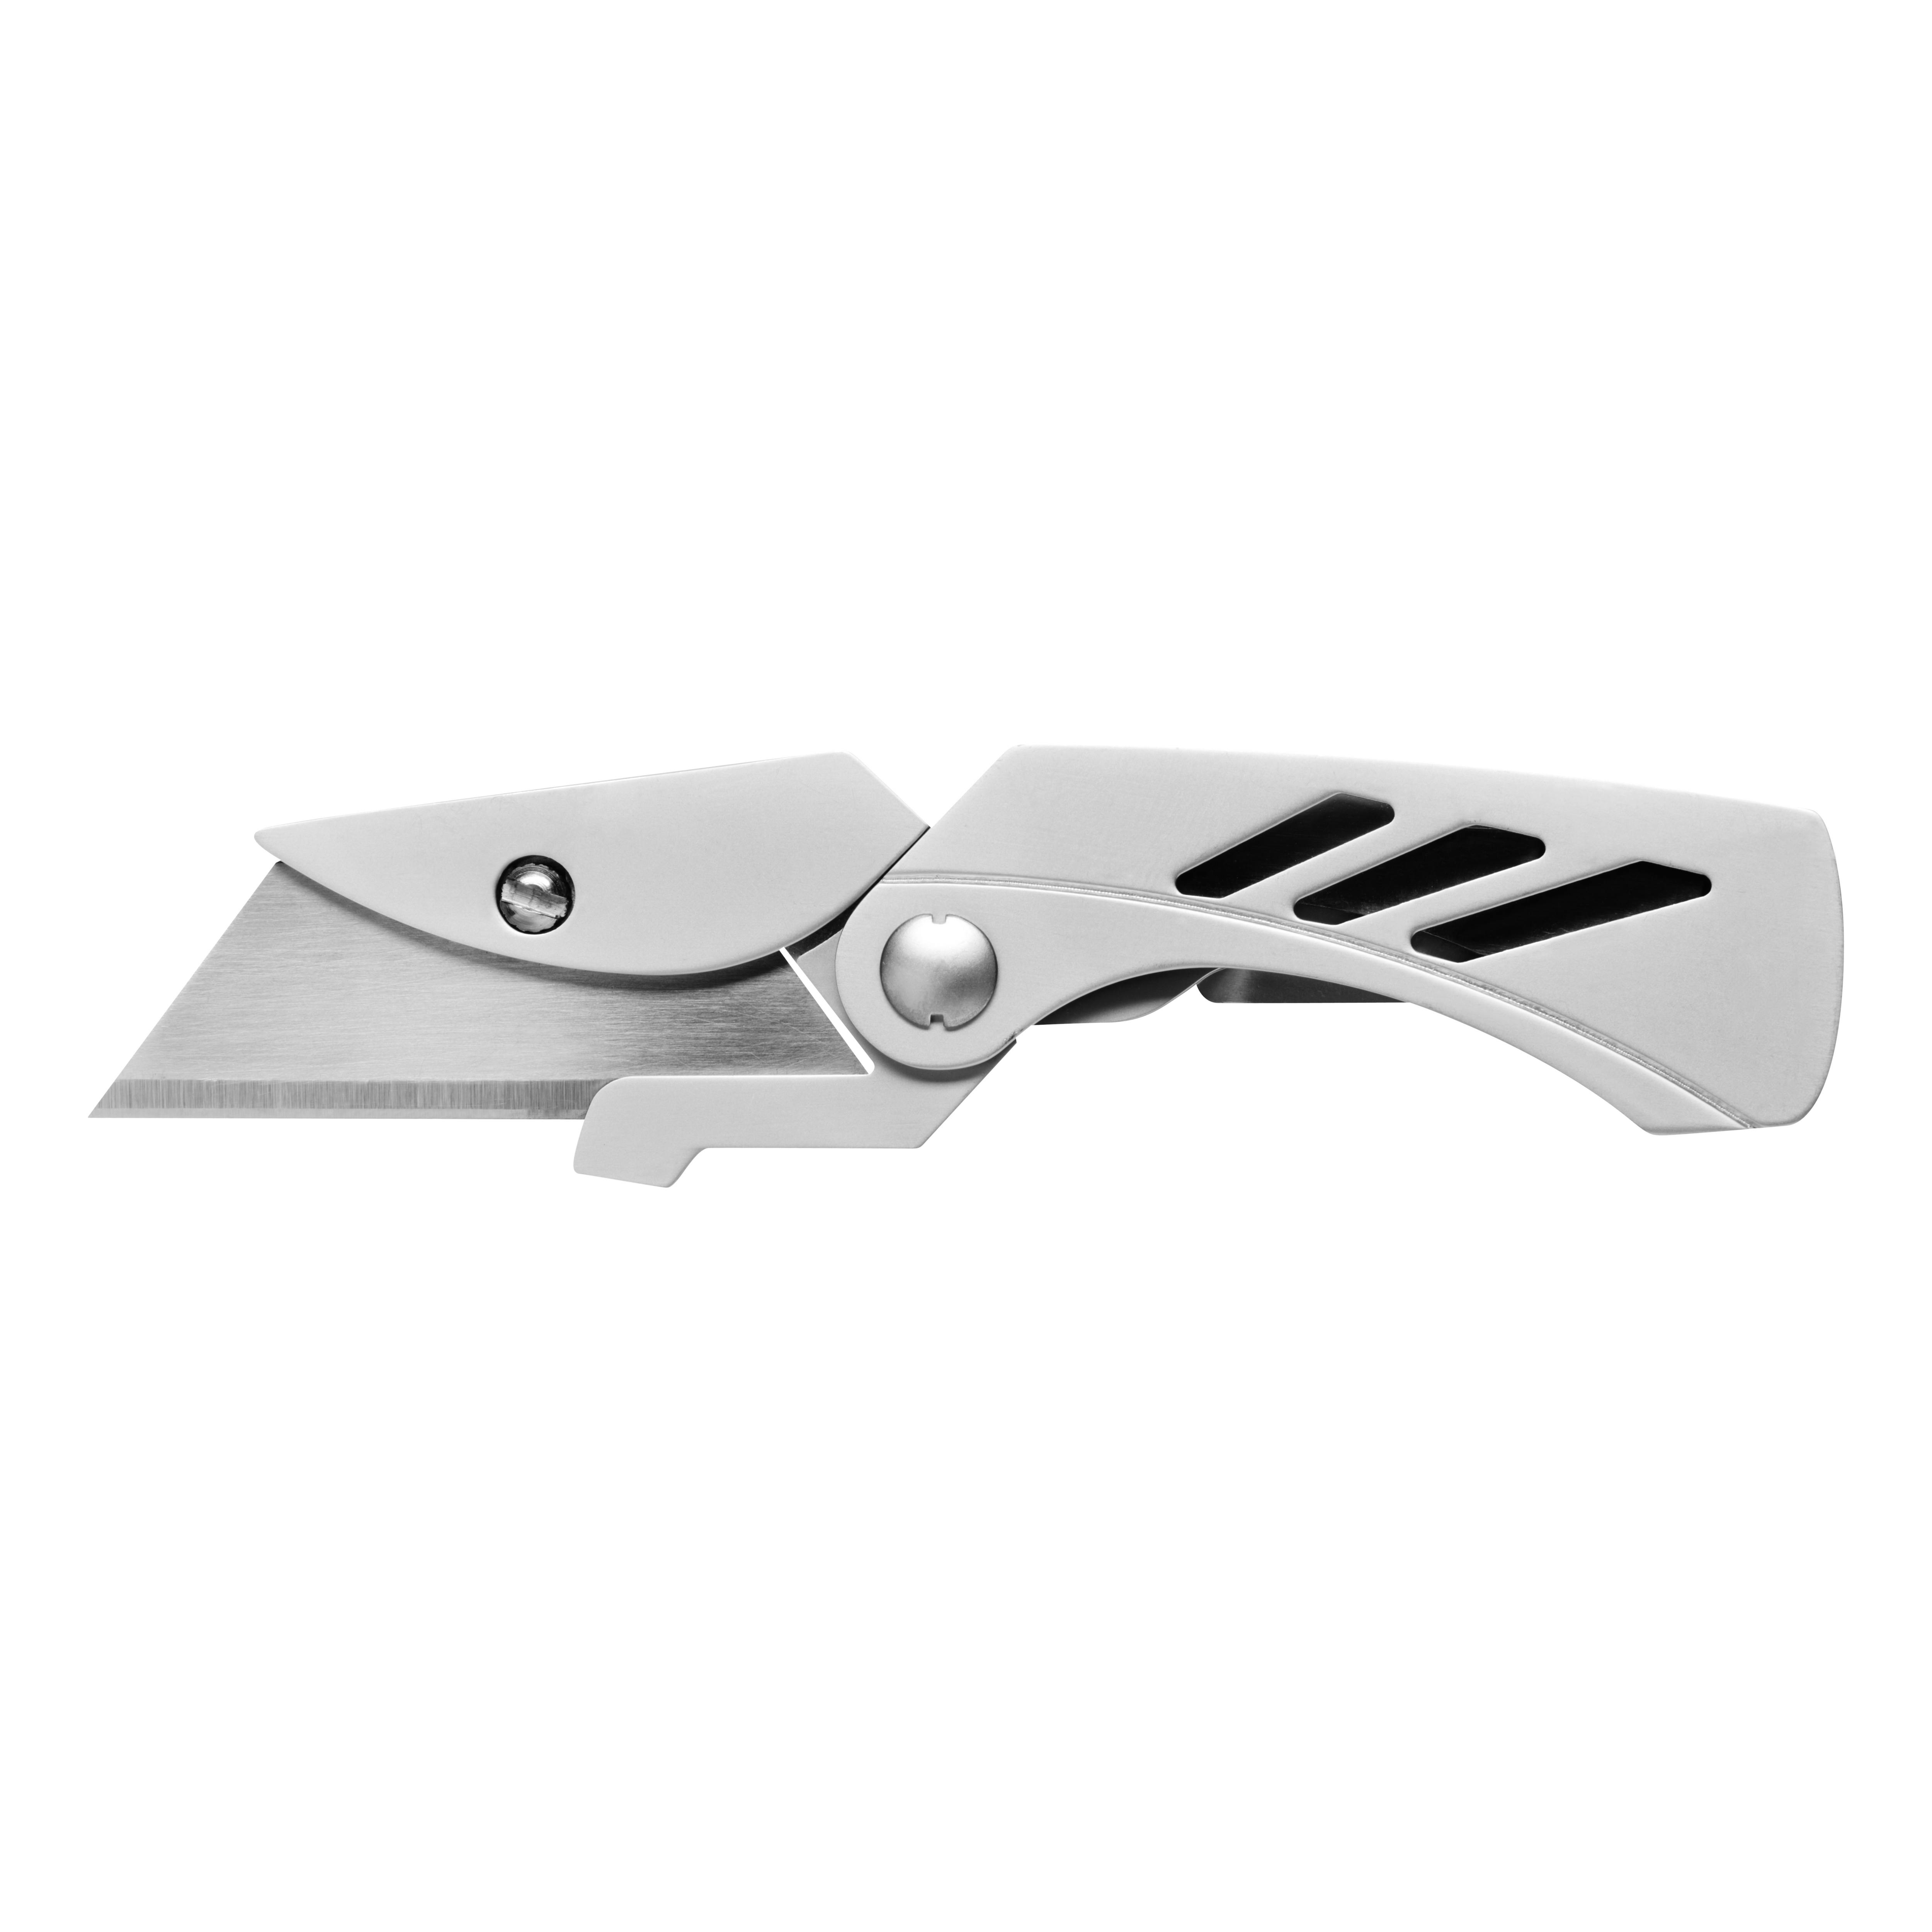 GERBER model425 Knife-